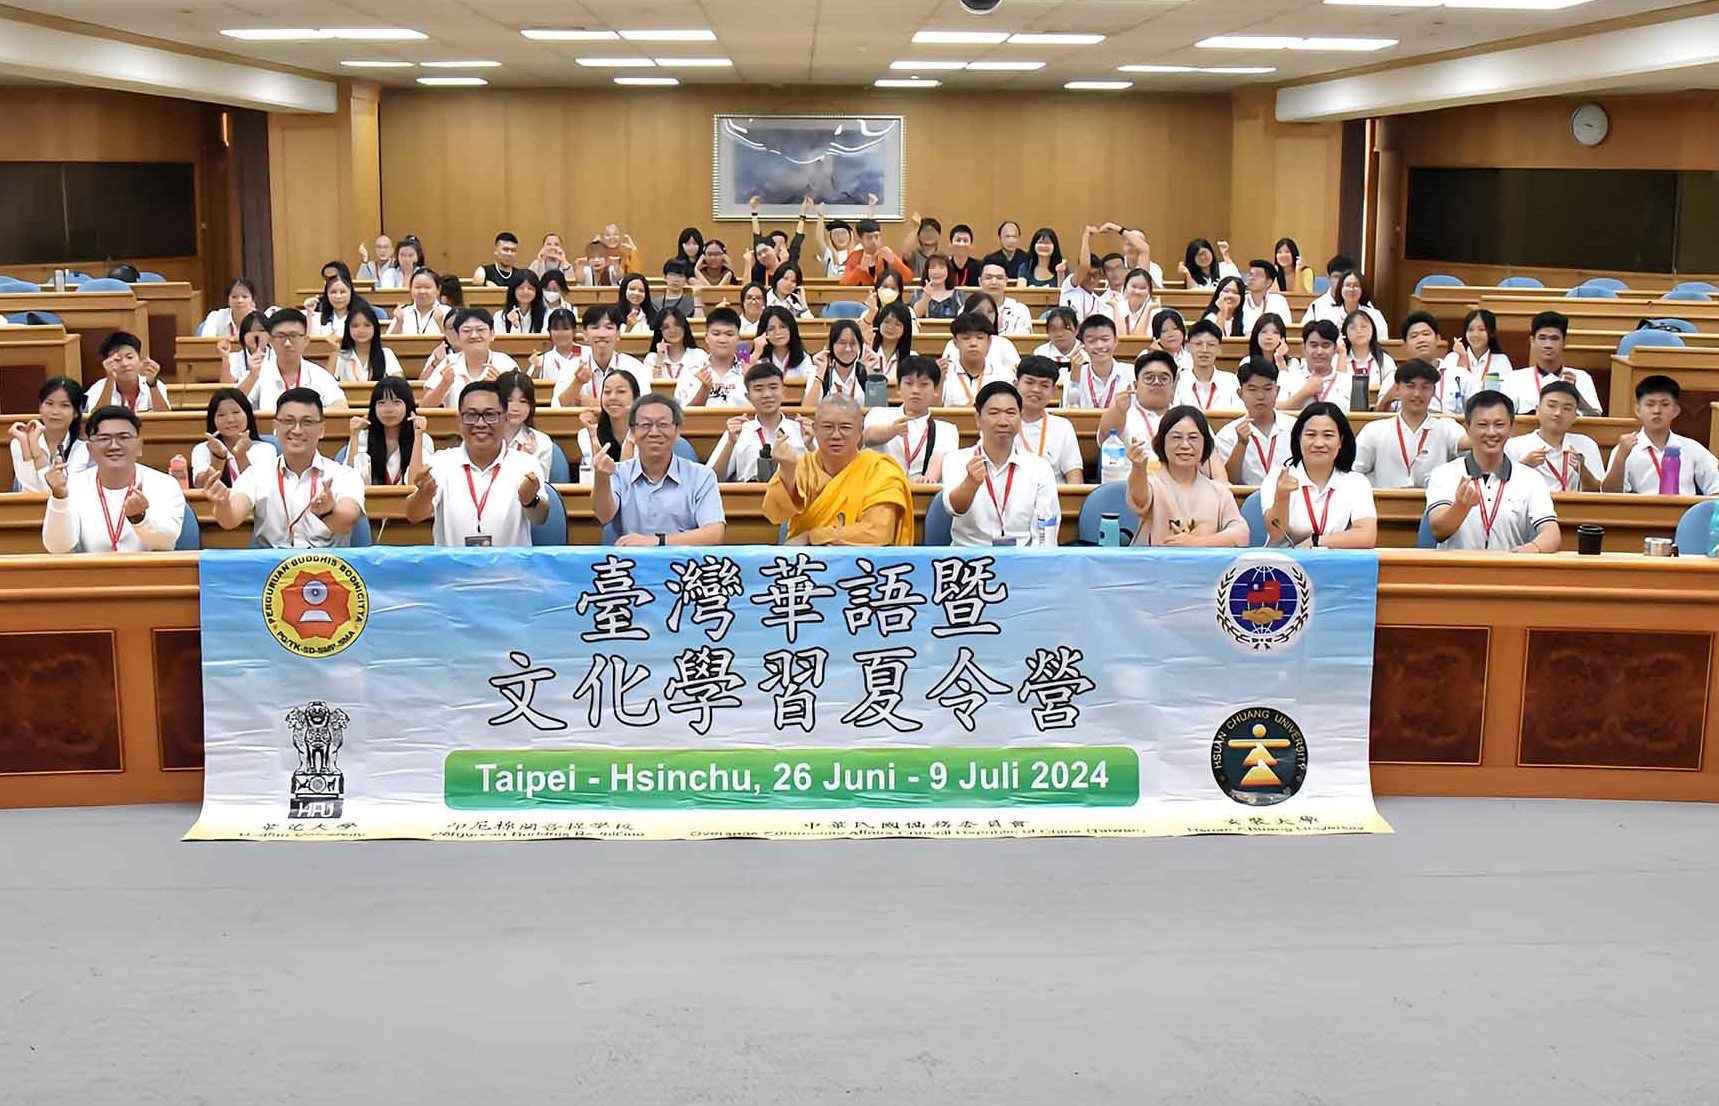 華梵大學為印尼高中生辦理臺灣華語暨文化學習夏令營。(華梵大學提供)